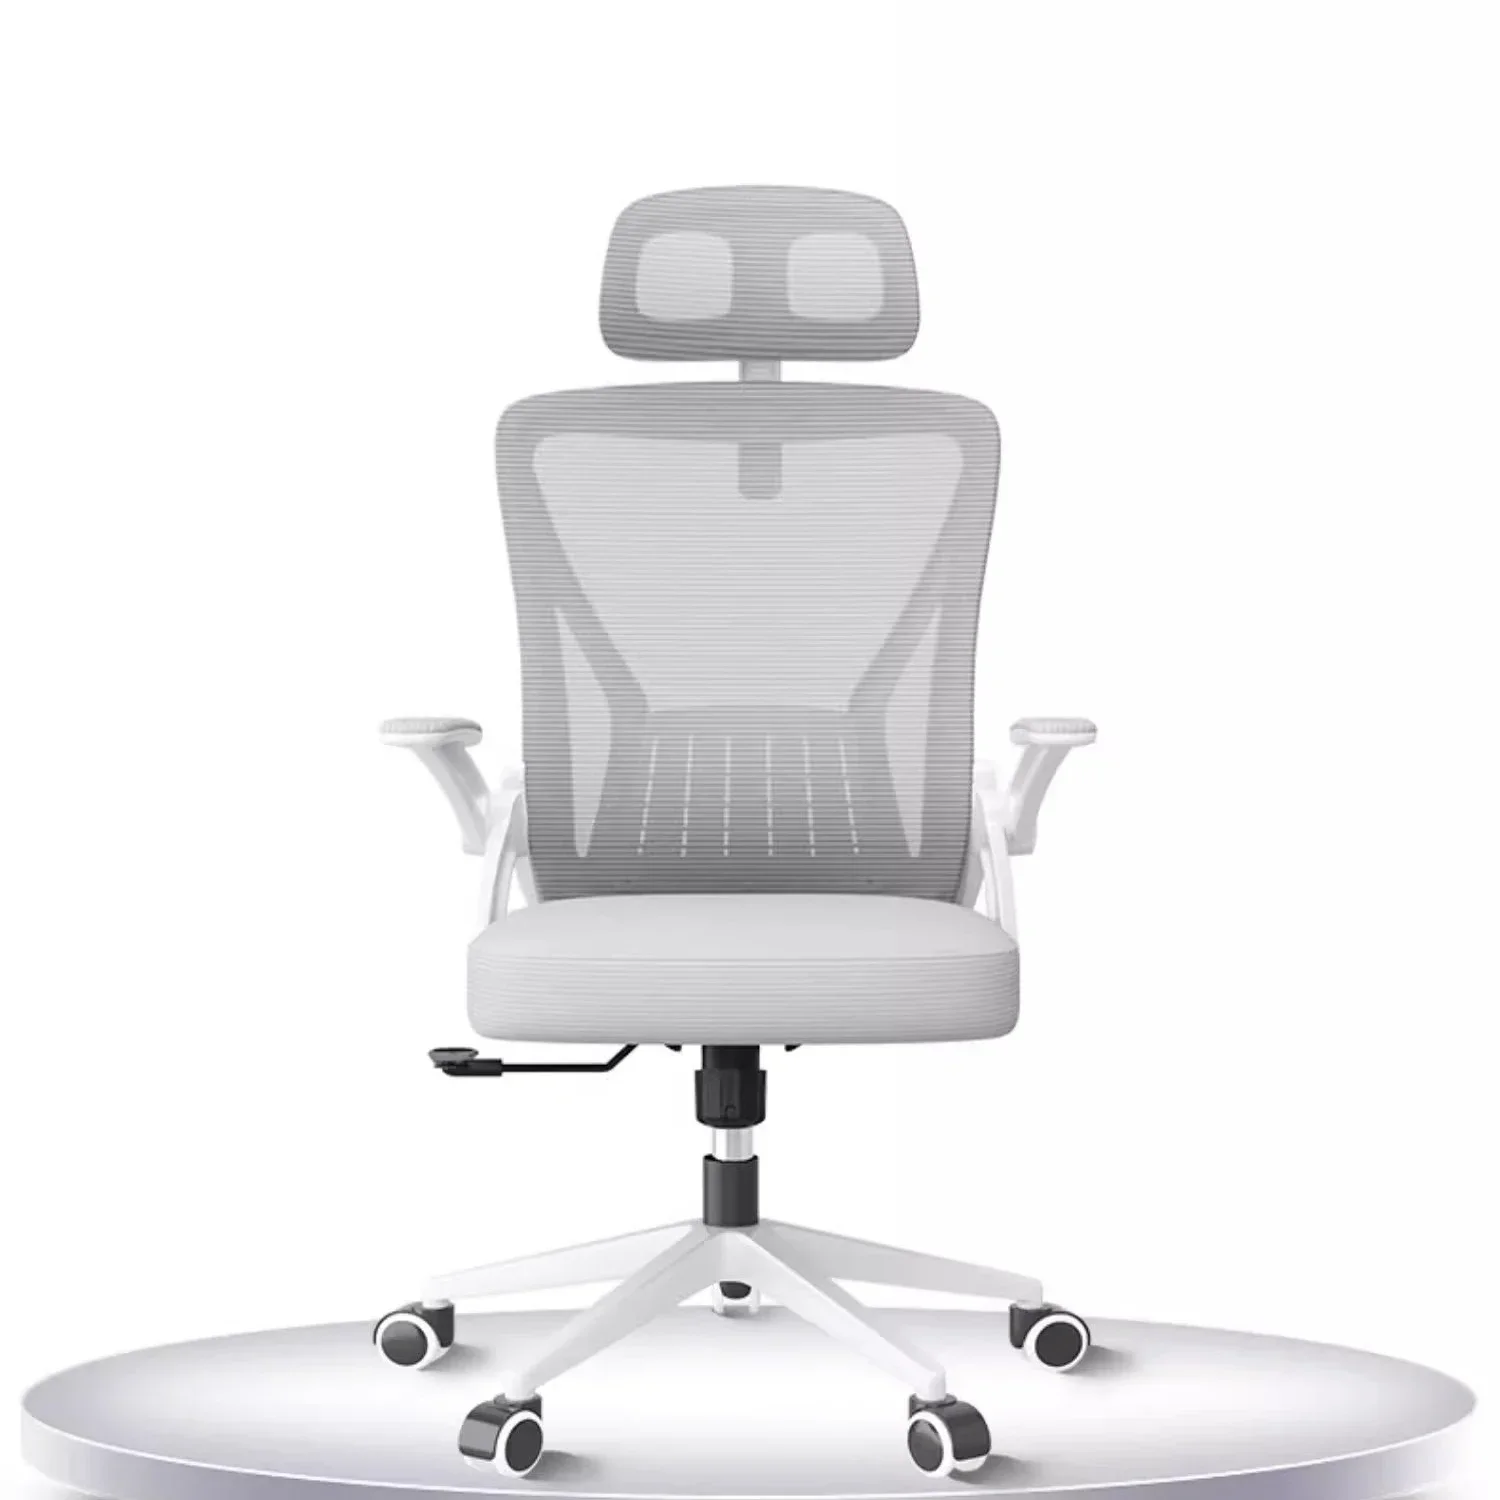 Studovat bělouš ergonomická židle psací stůl ložnice škola mládež rotujícího úřad židle pracující relaxační chaise de kancelář úřad zásoby